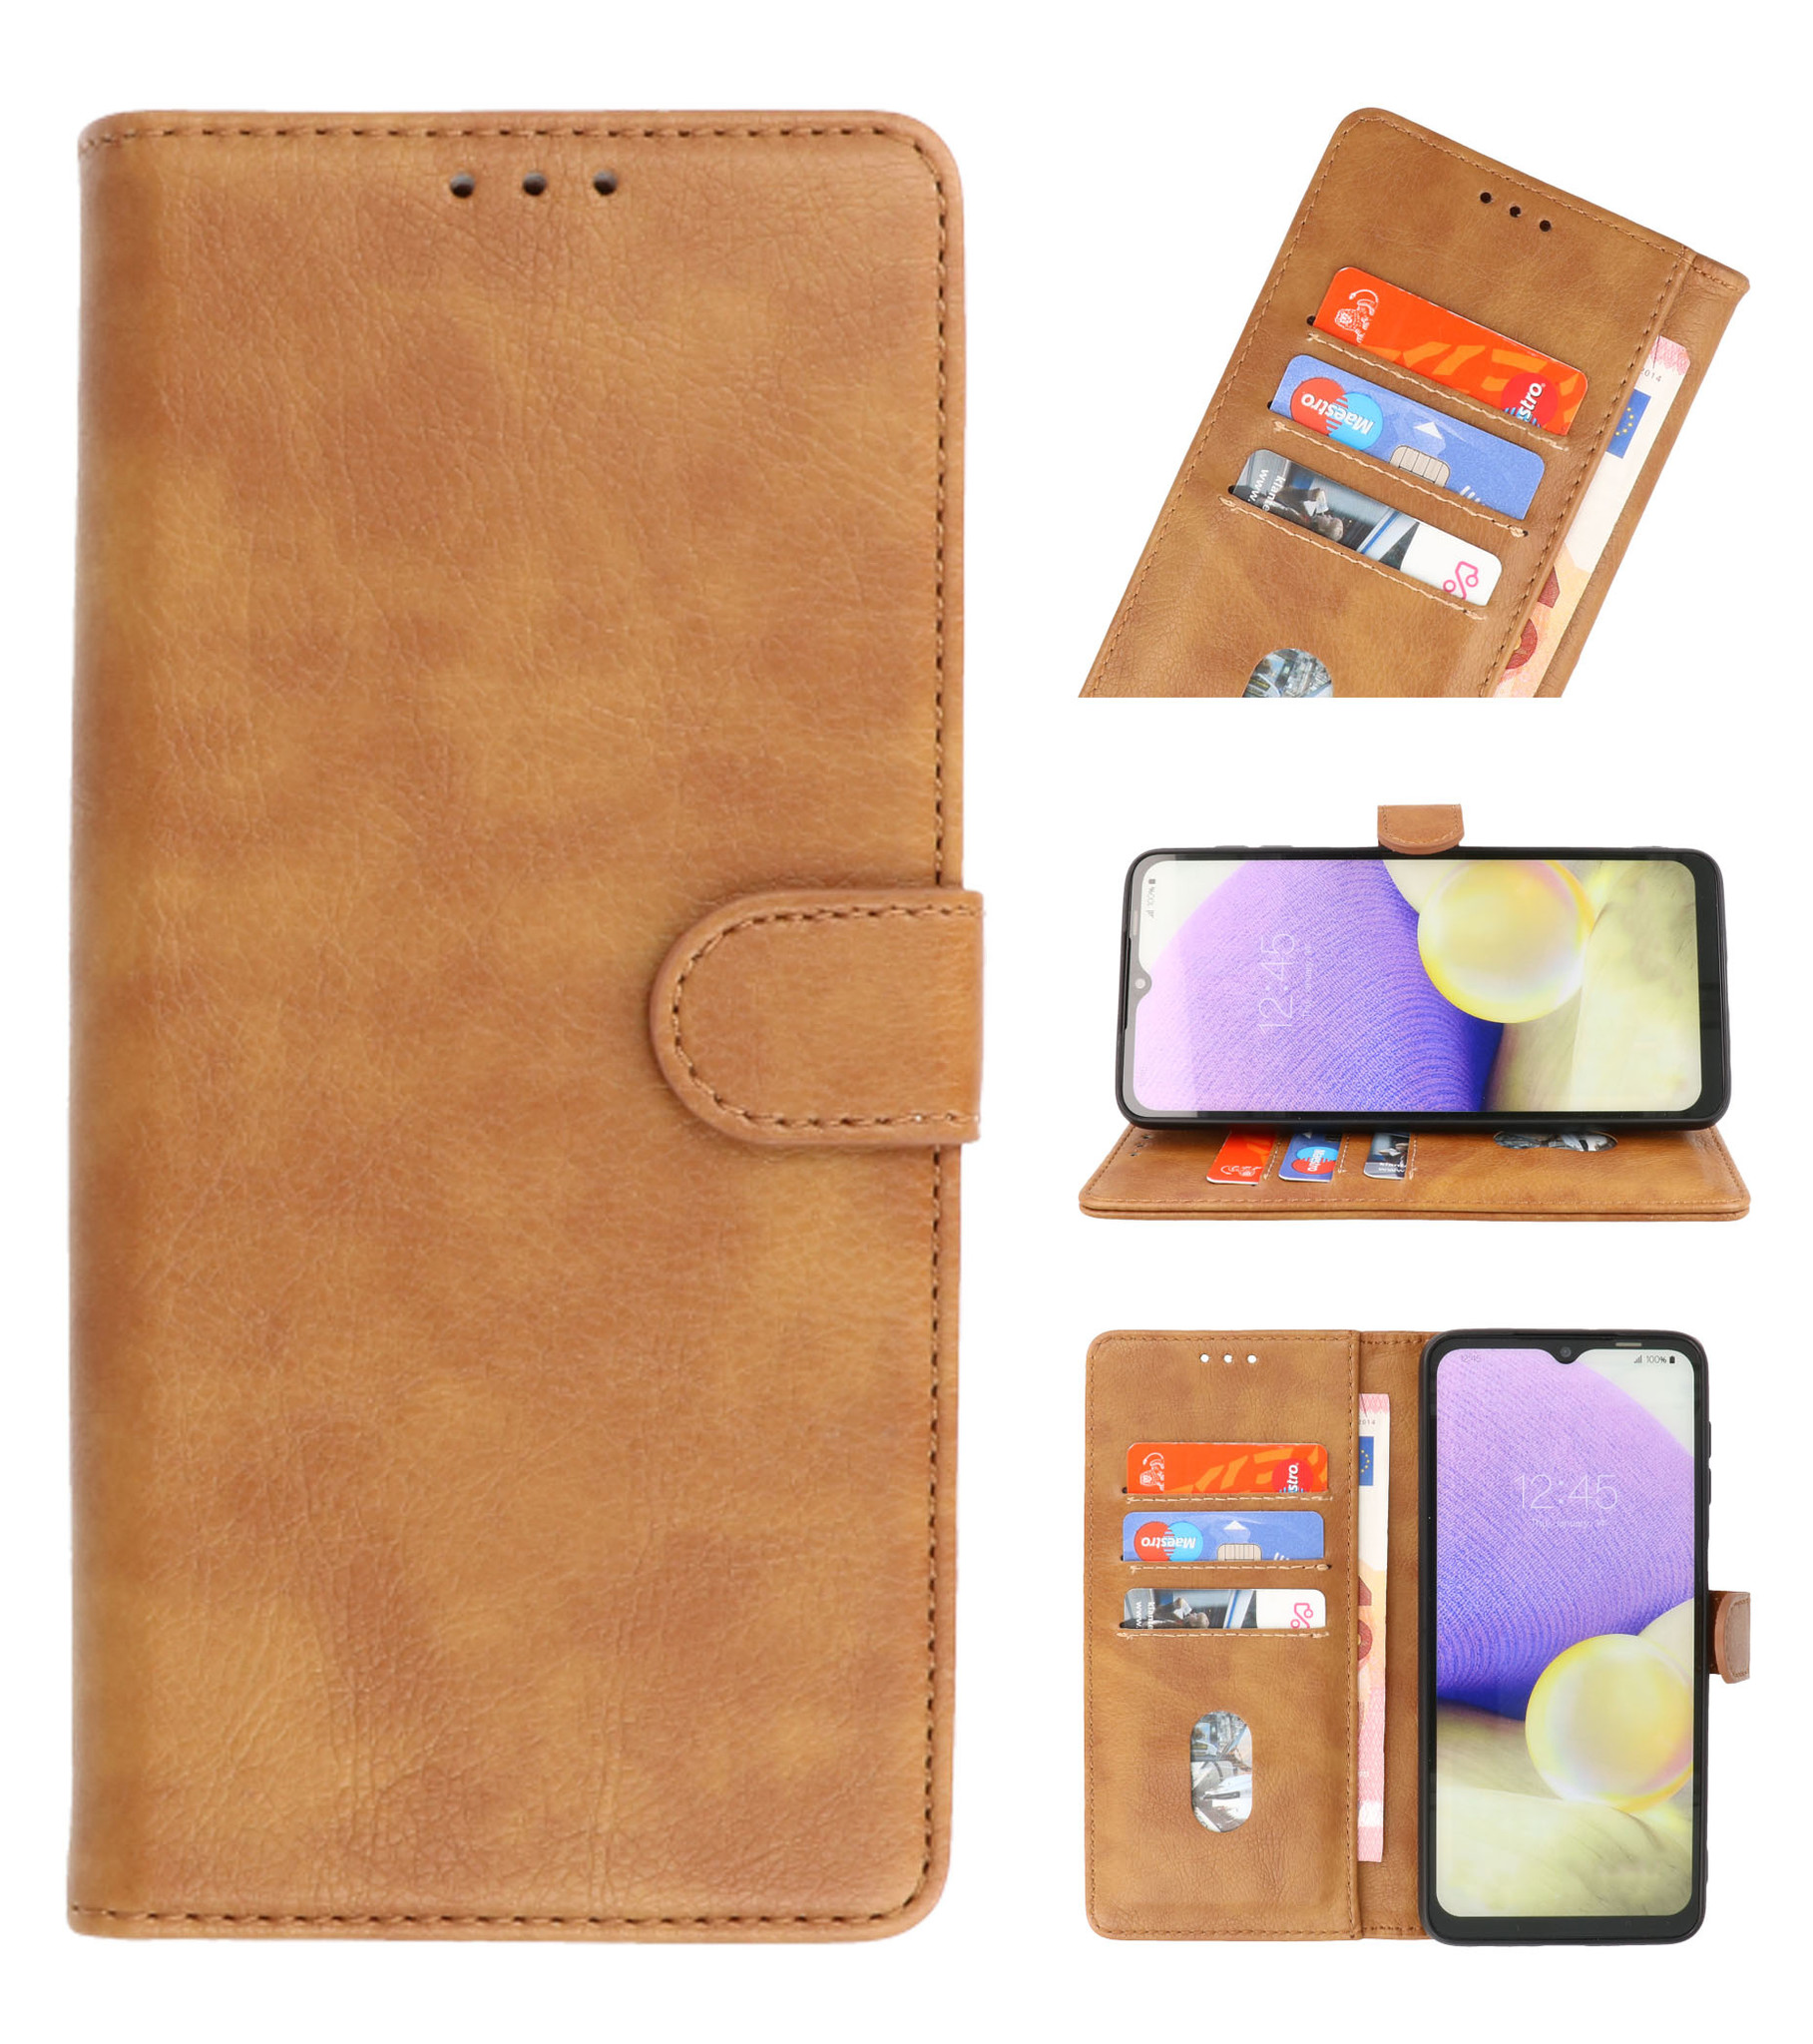 Bookstyle Wallet Cases Hülle für Samsung Galaxy S20 FE Brown